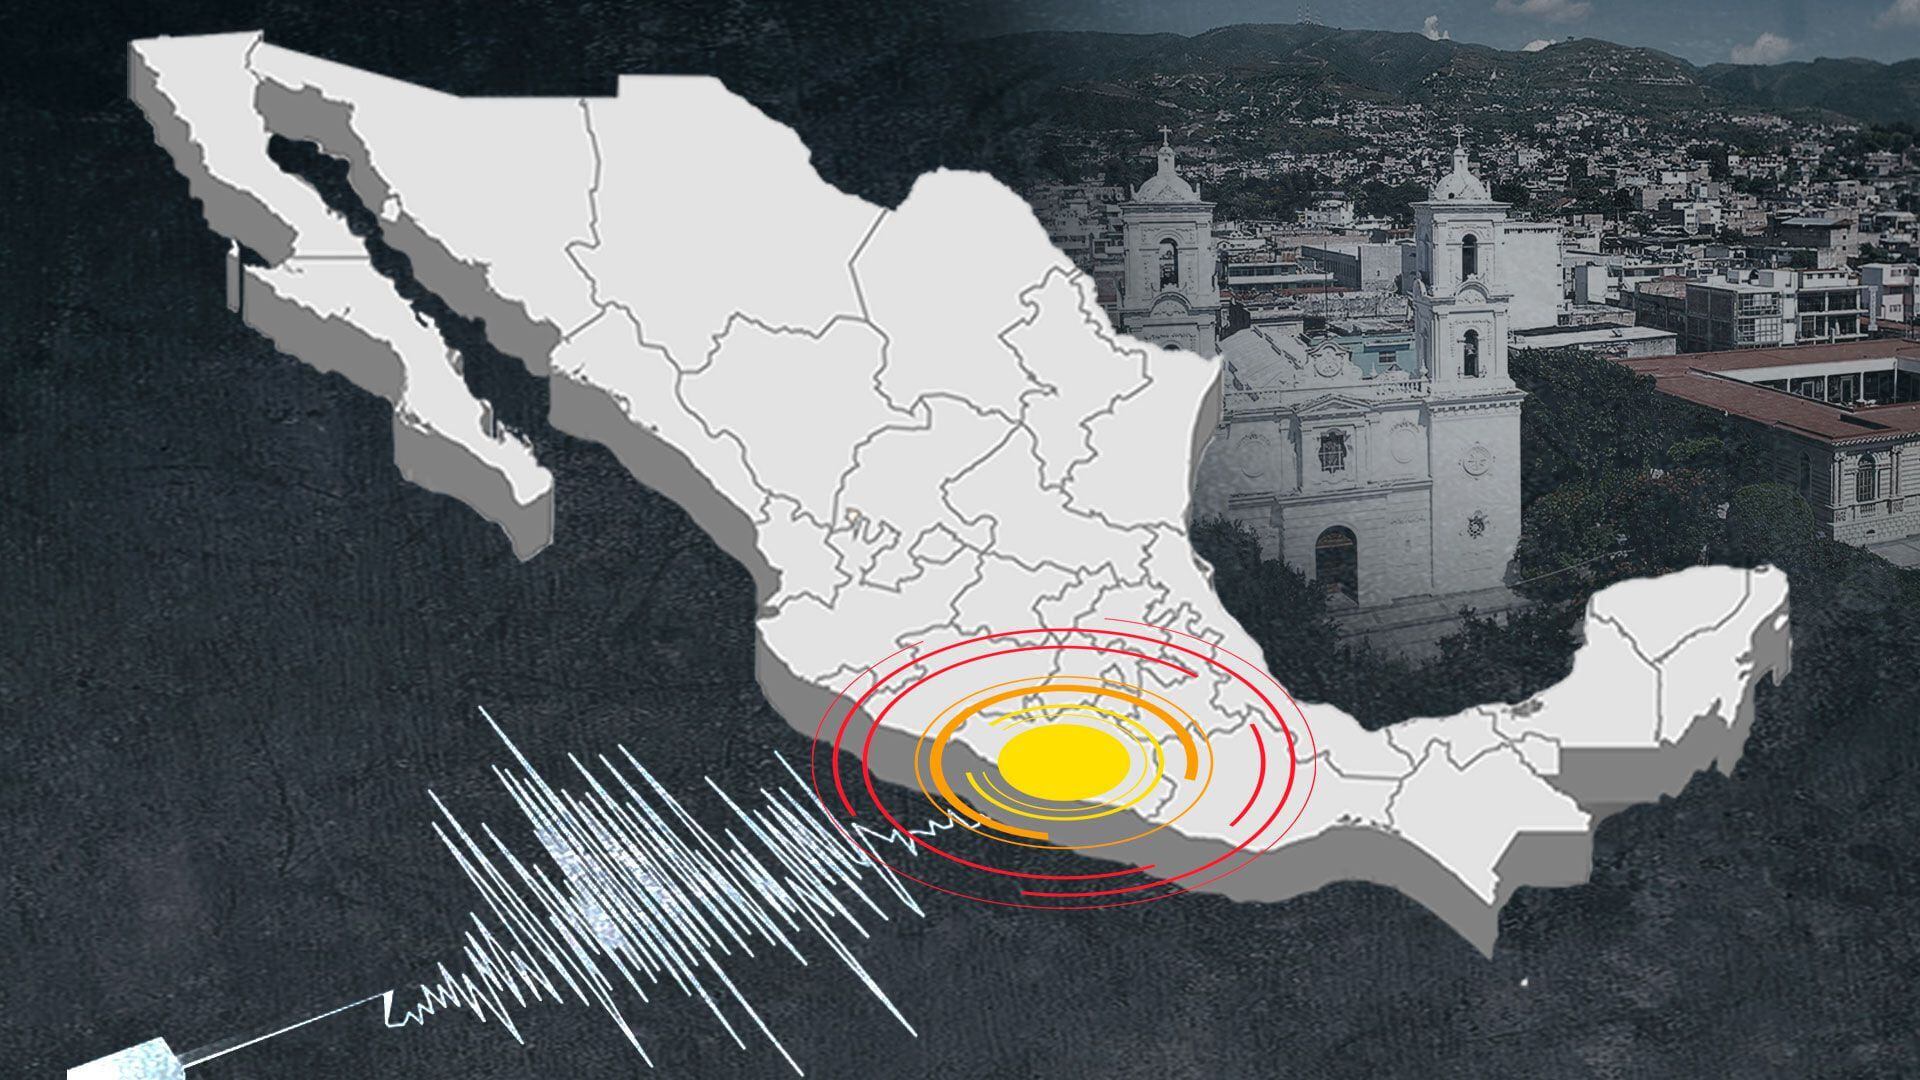 Sismo en México: temblor magnitud 5.2 con epicentro en Pijijiapan